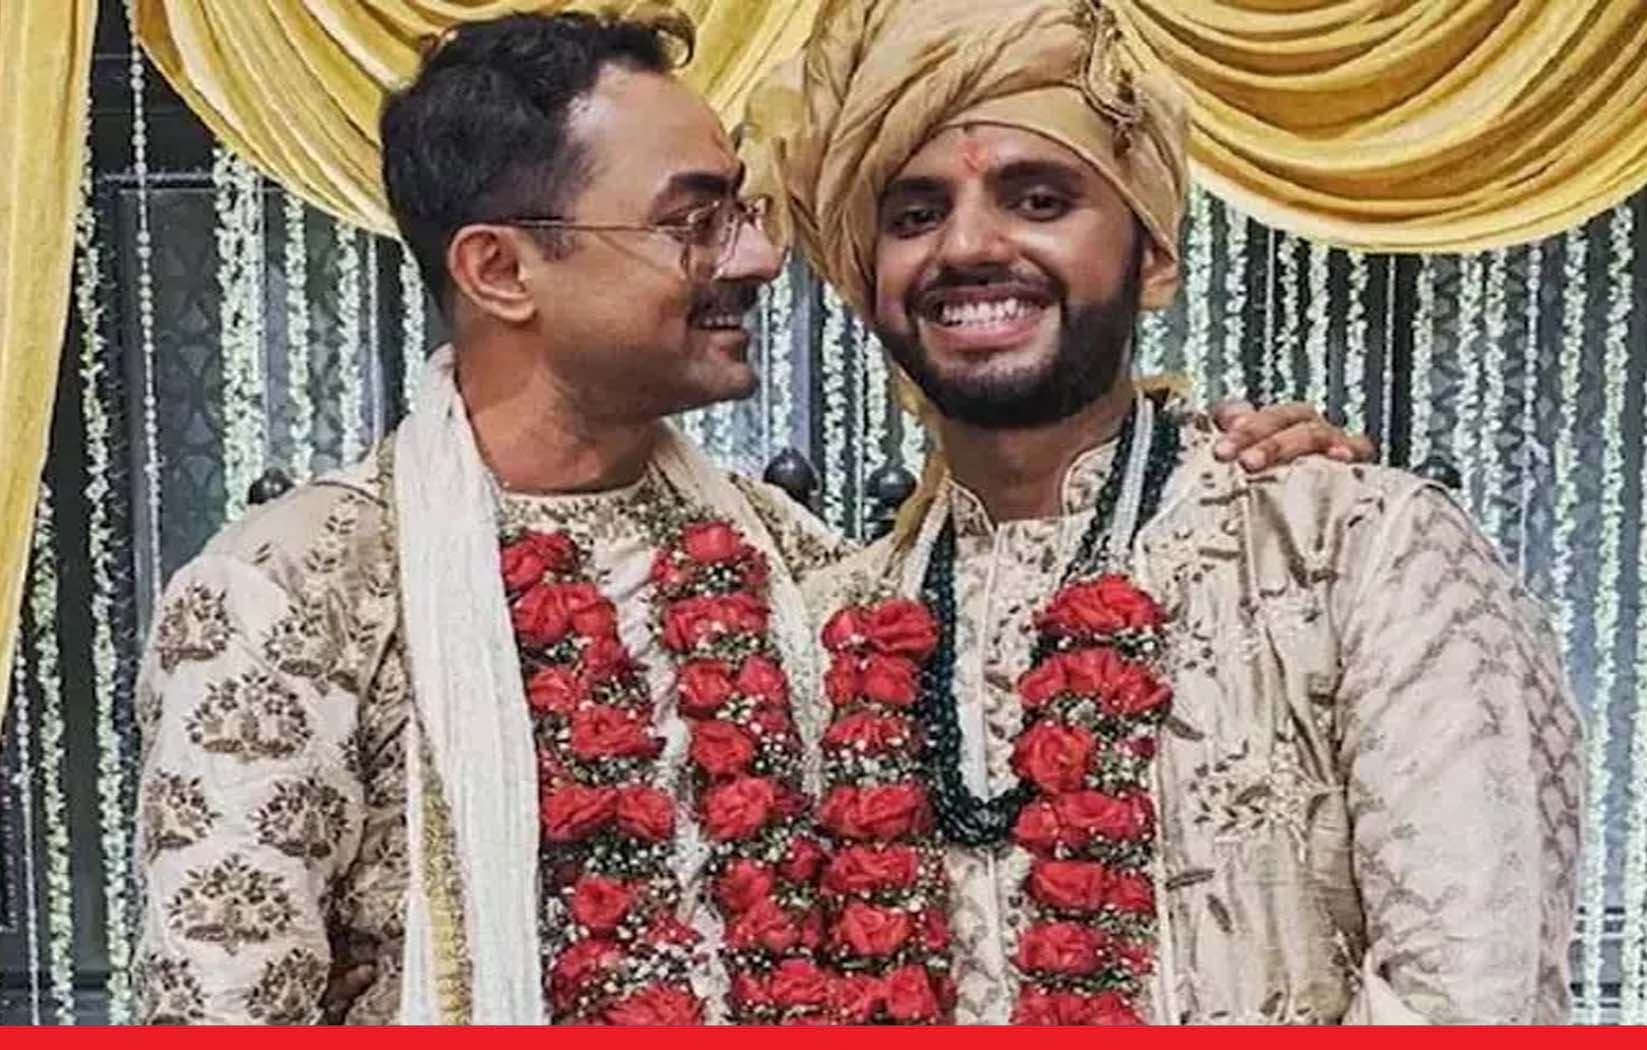 कोलकाता में शादी के बंधन में बंधे दो समलैंगिक पुरुष